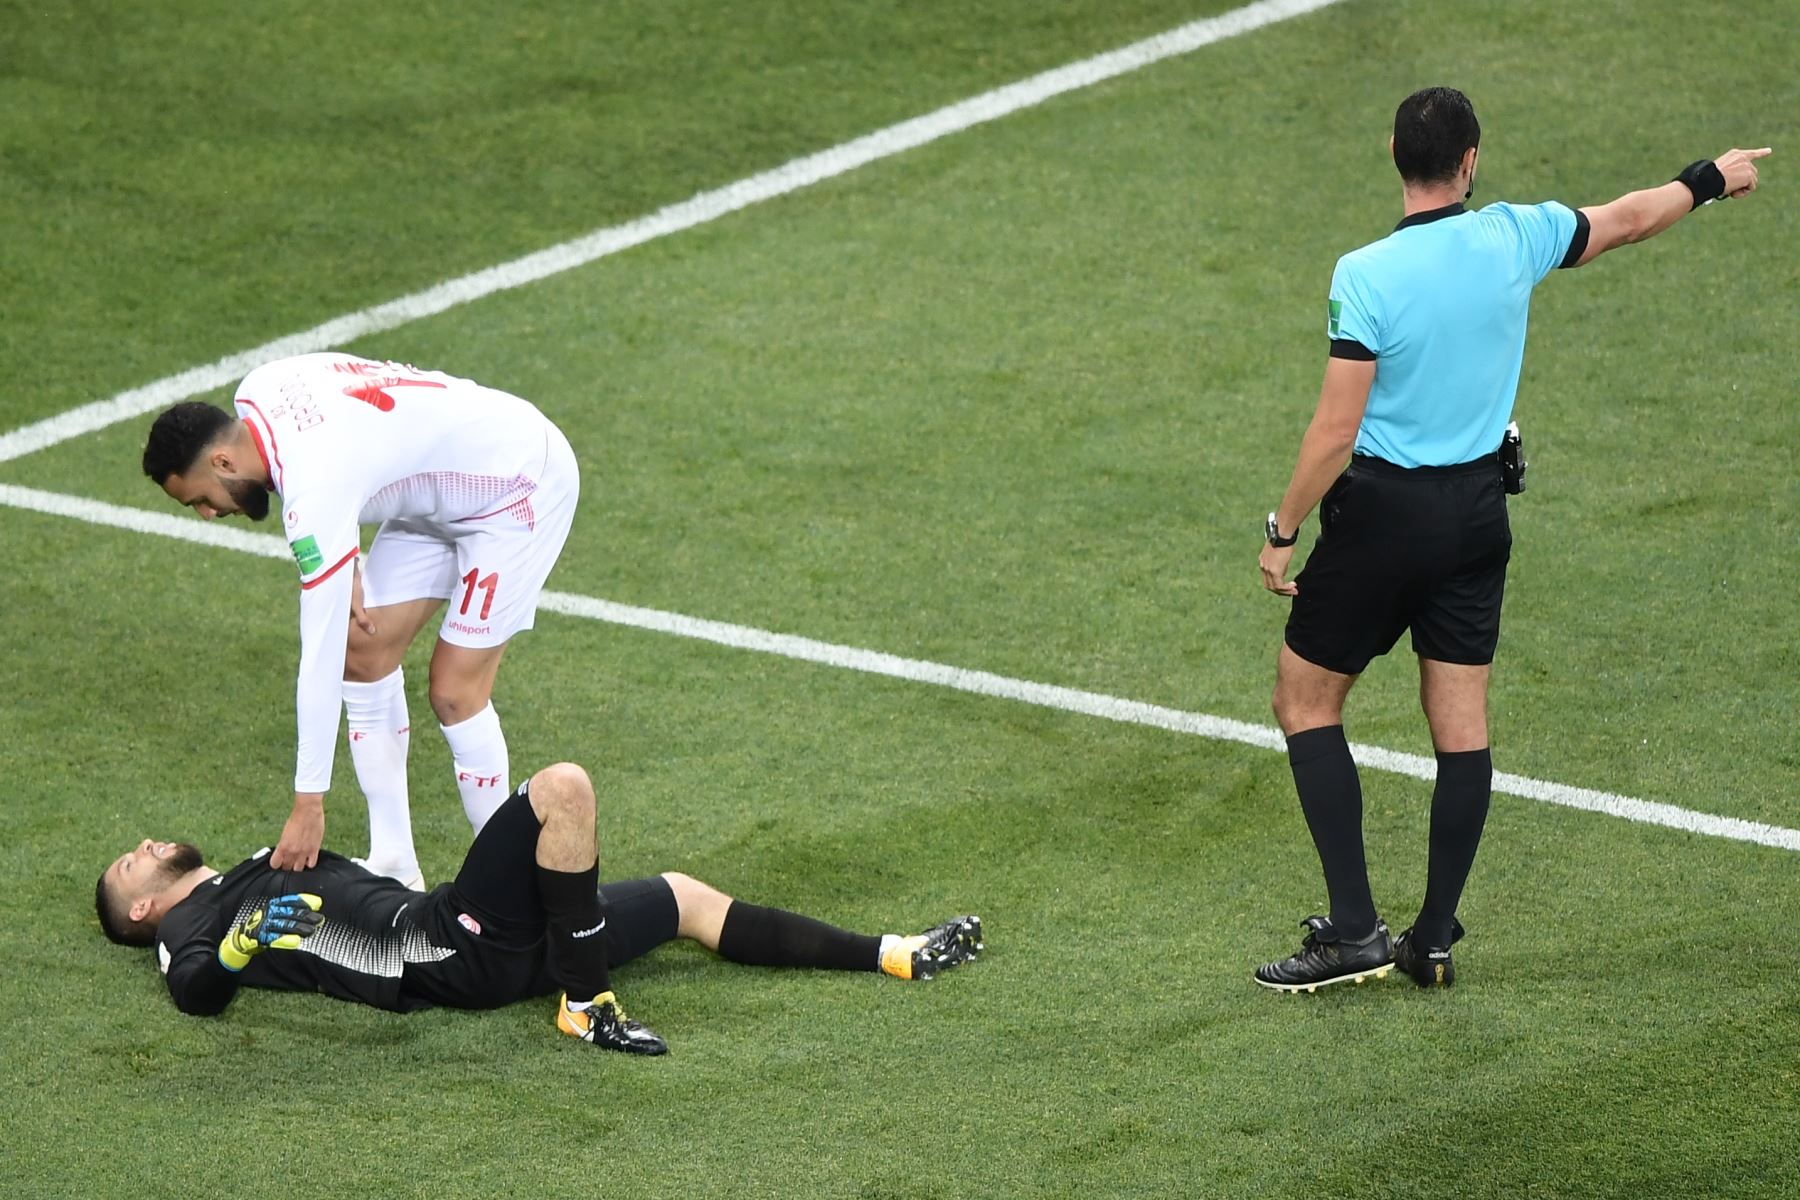 El defensa de Túnez Dylan Bronn (2L) reacciona con el portero de Túnez Mouez Hassen durante el partido de fútbol de la Copa del mundo Rusia 2018 Grupo G entre Túnez e Inglaterra en el Volgogrado. AFP